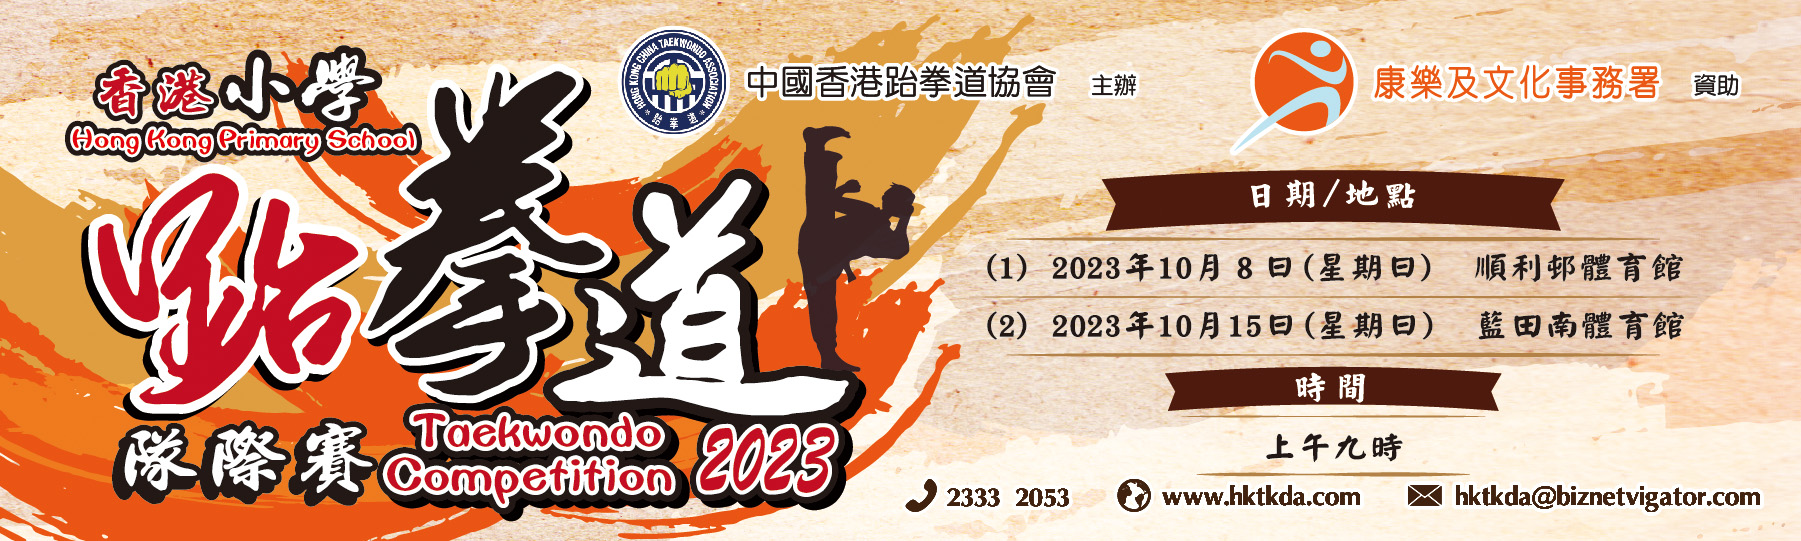 香港小學跆拳道隊際賽2023